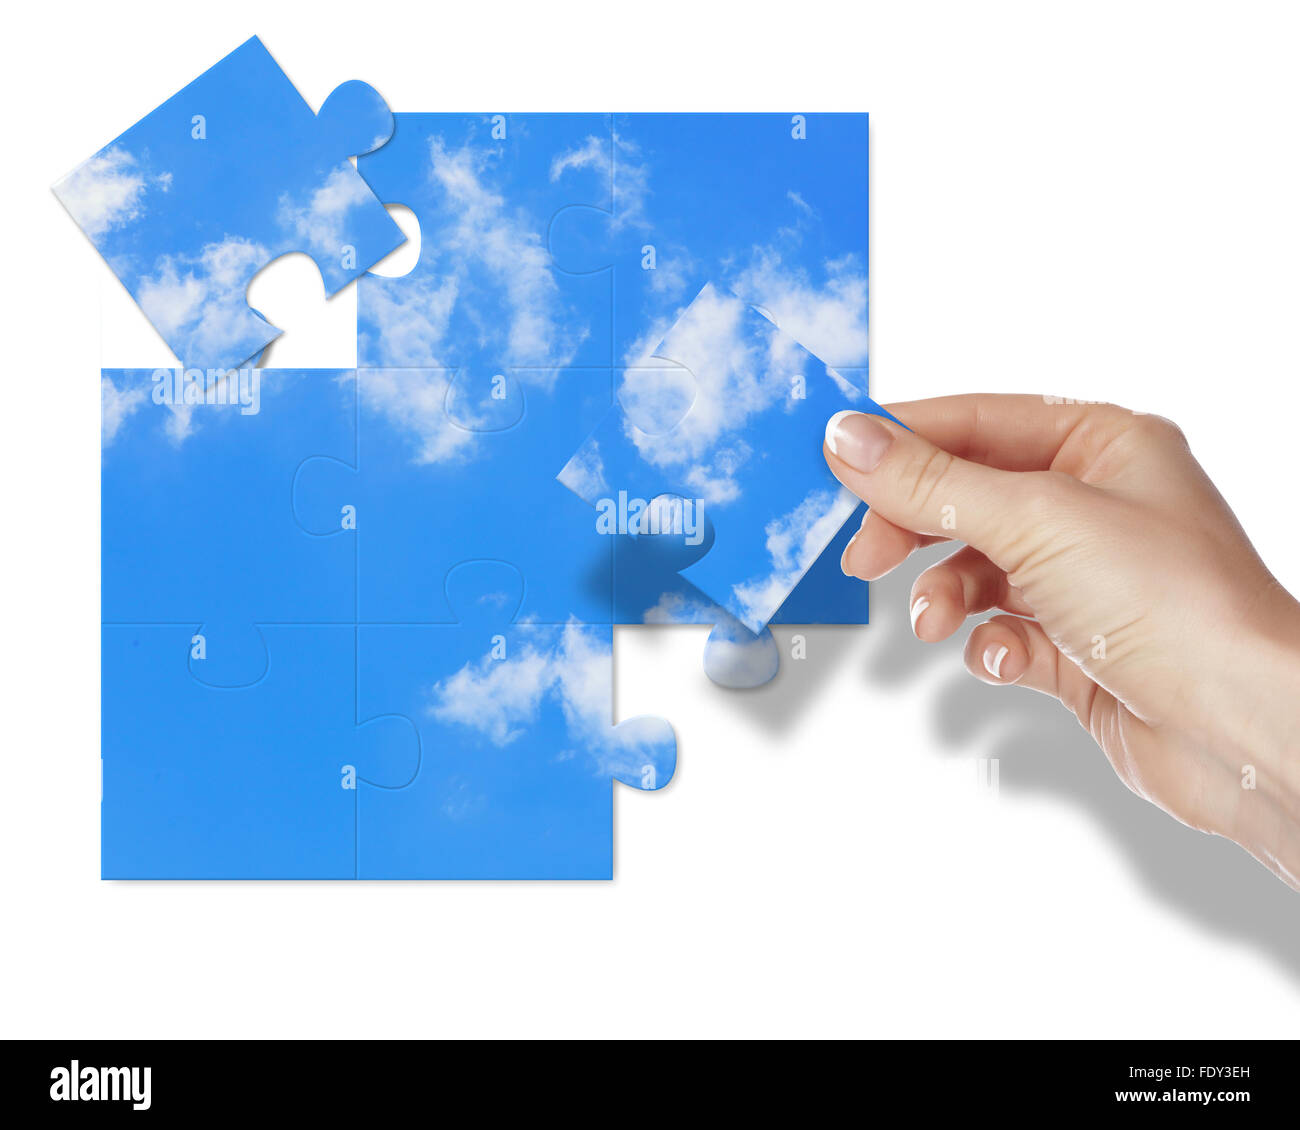 Immagine di un puzzle con cielo blu e nuvole bianche Foto Stock